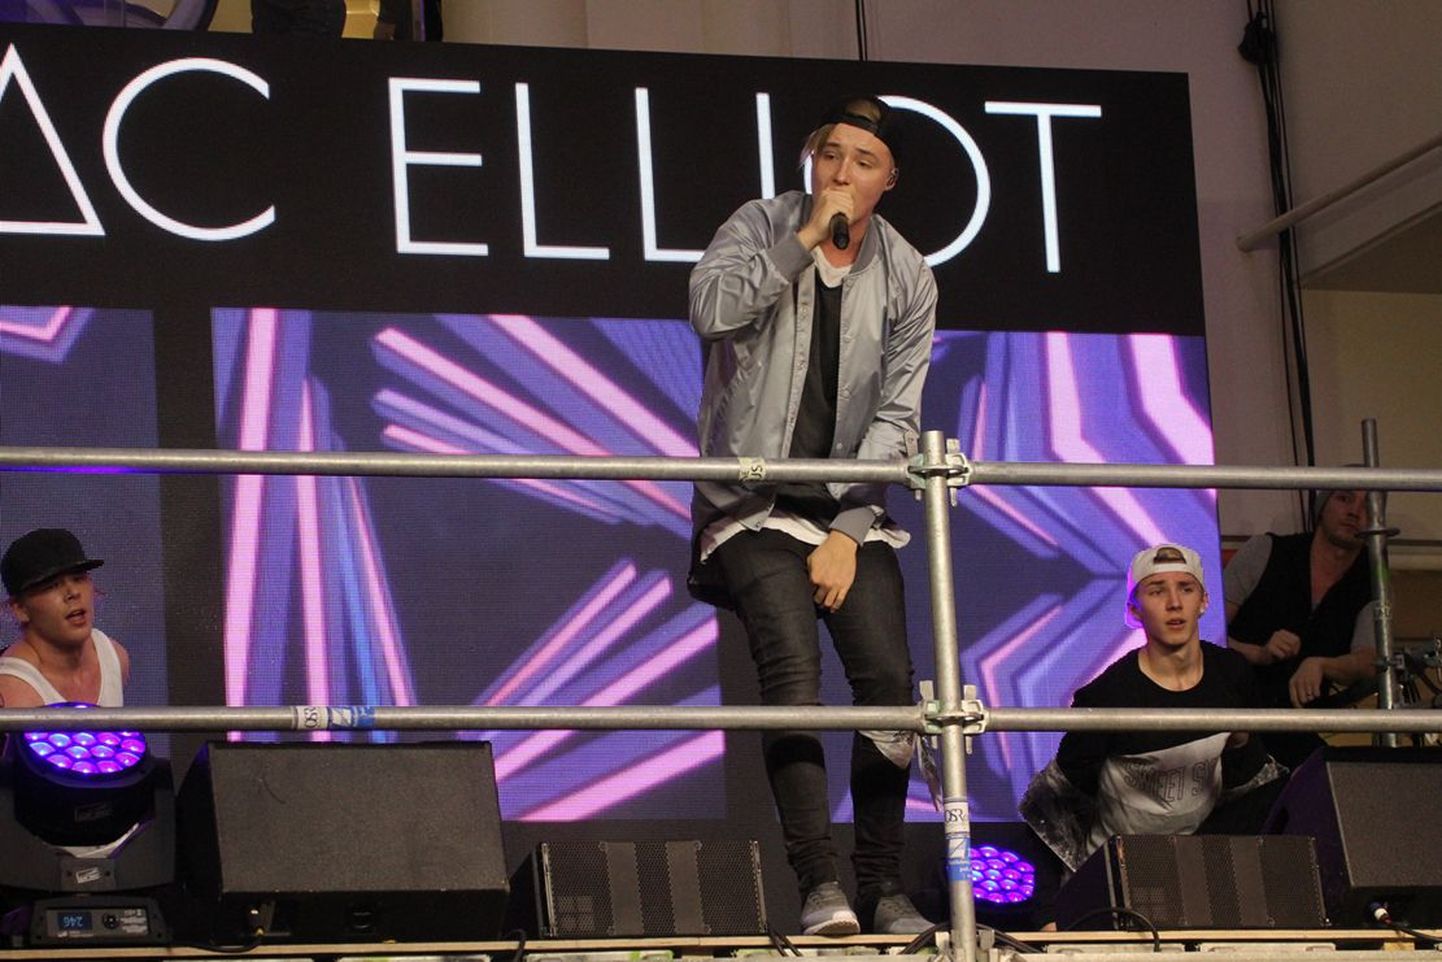 Eestlased tervitasid Soome popstaar Isac Elliot'i